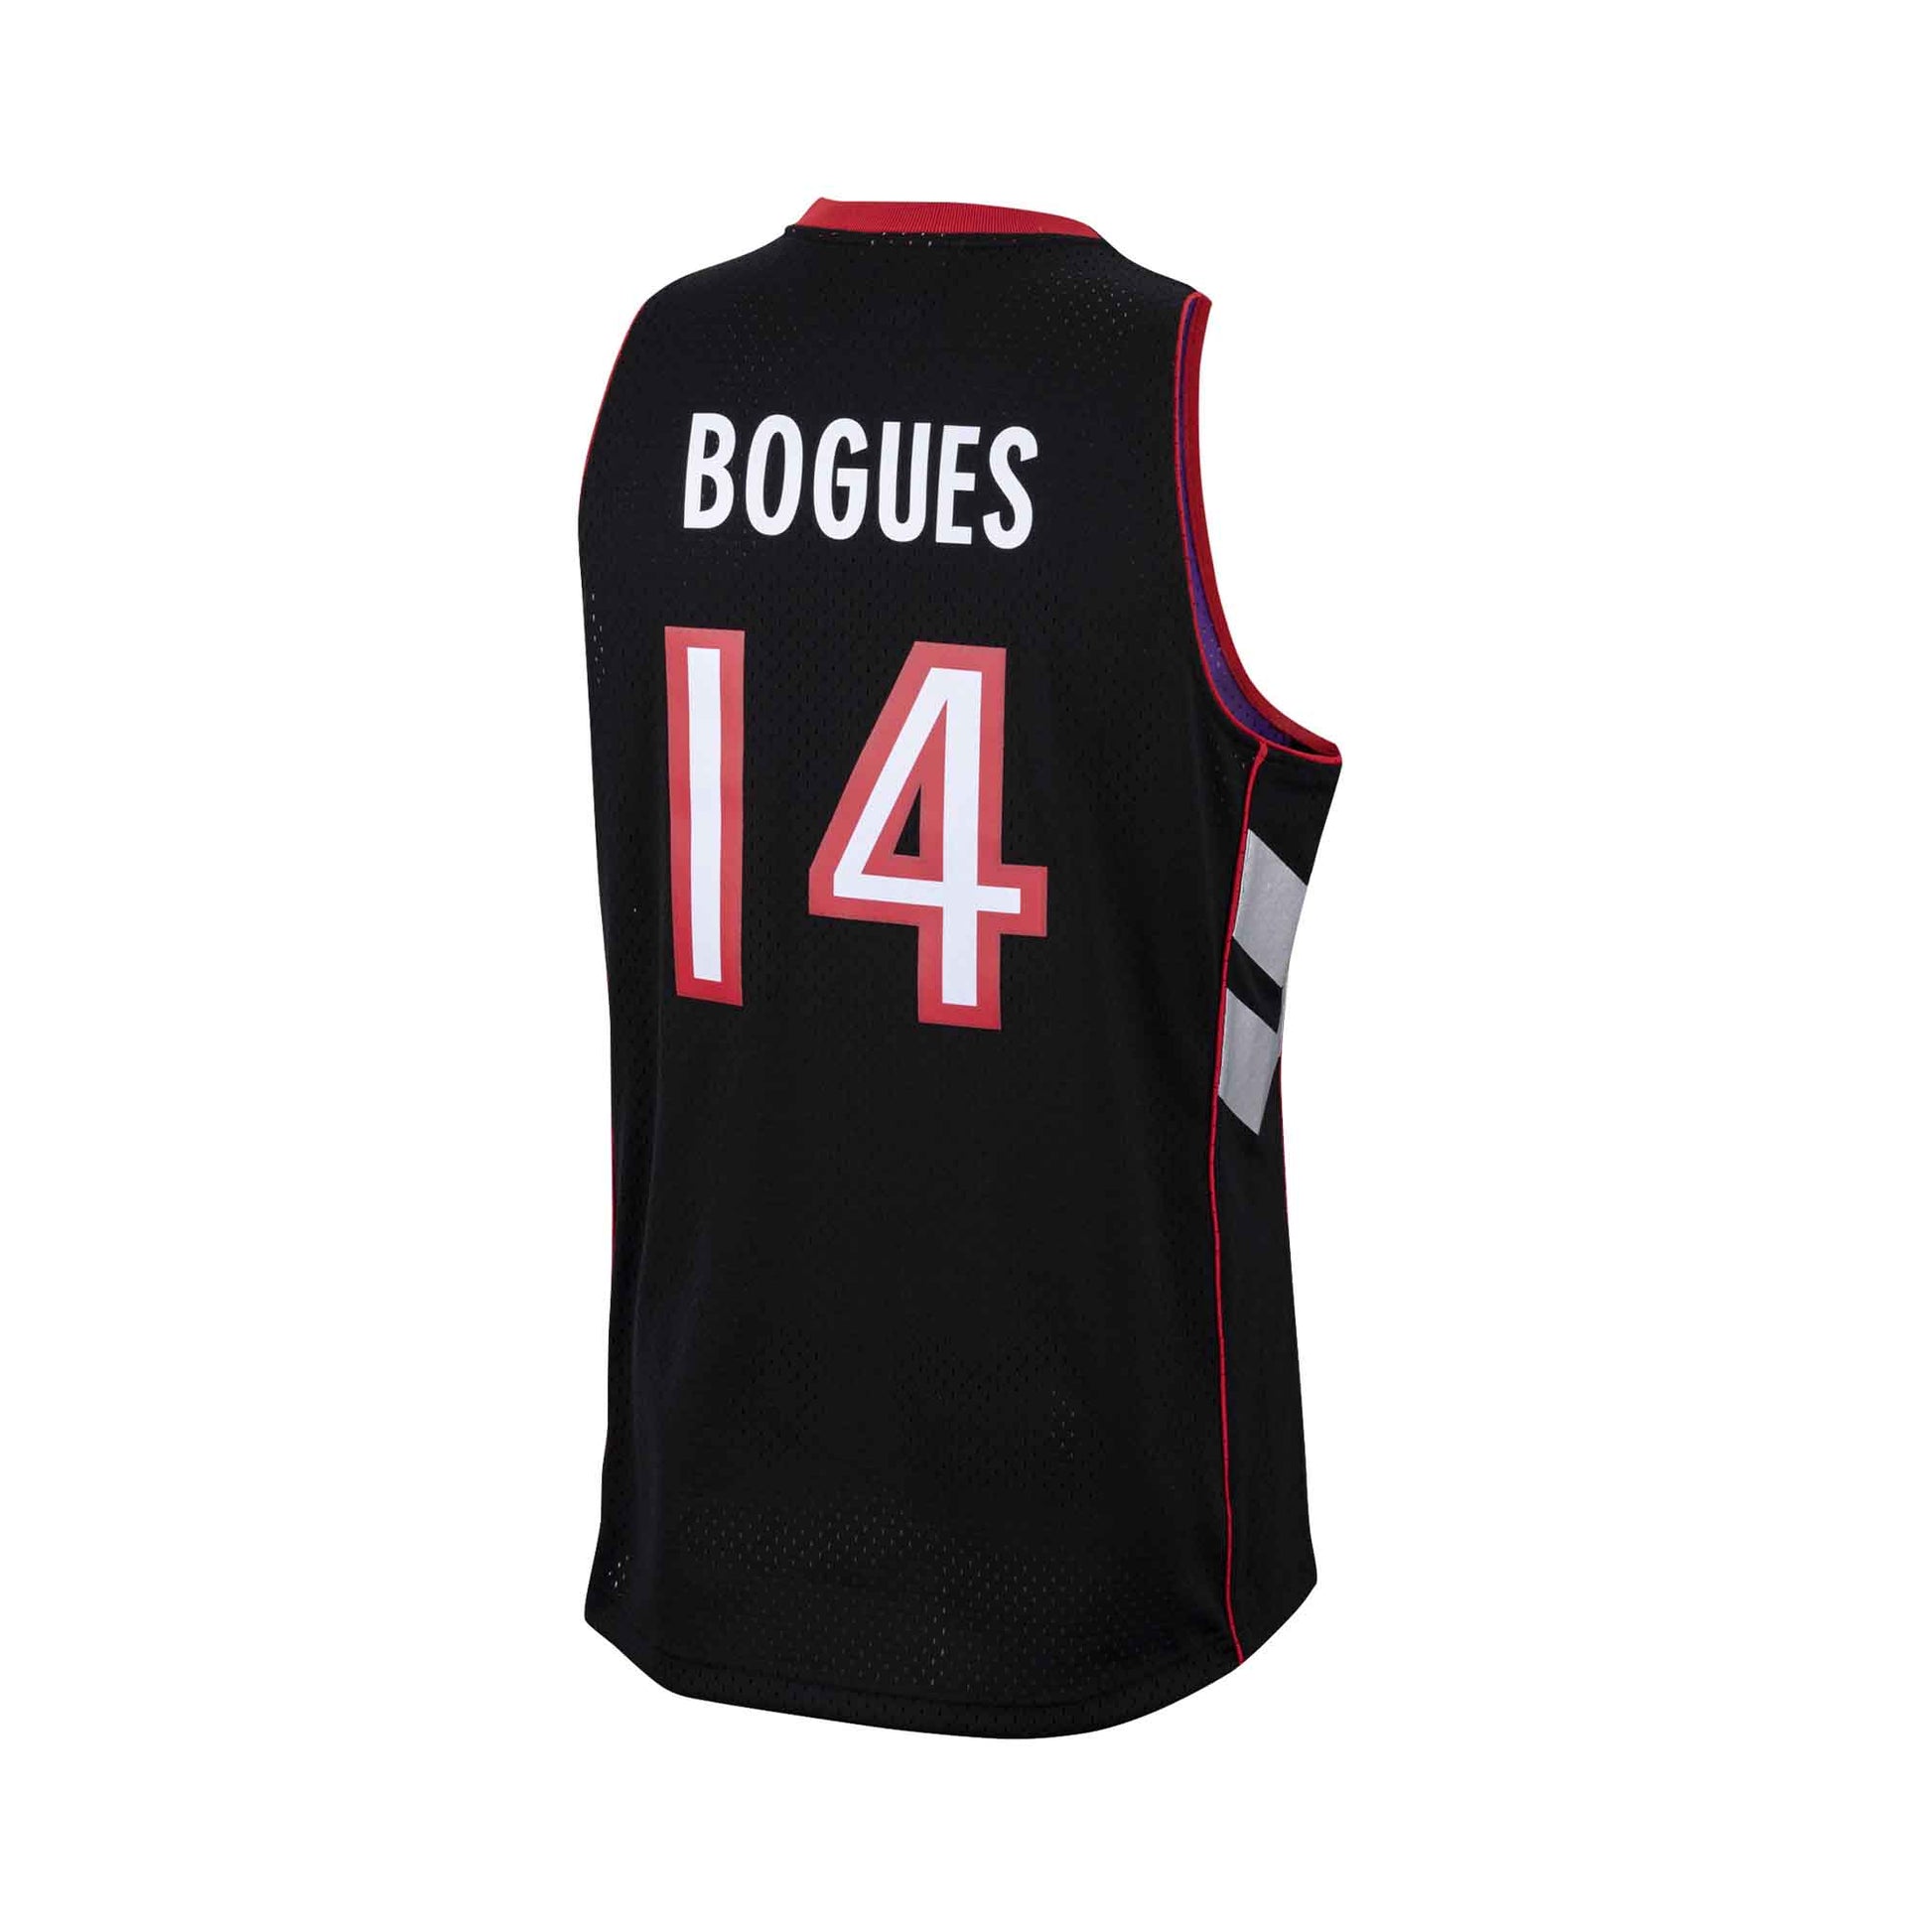 Muggsy Bogues - Toronto Raptors, 1999–2001